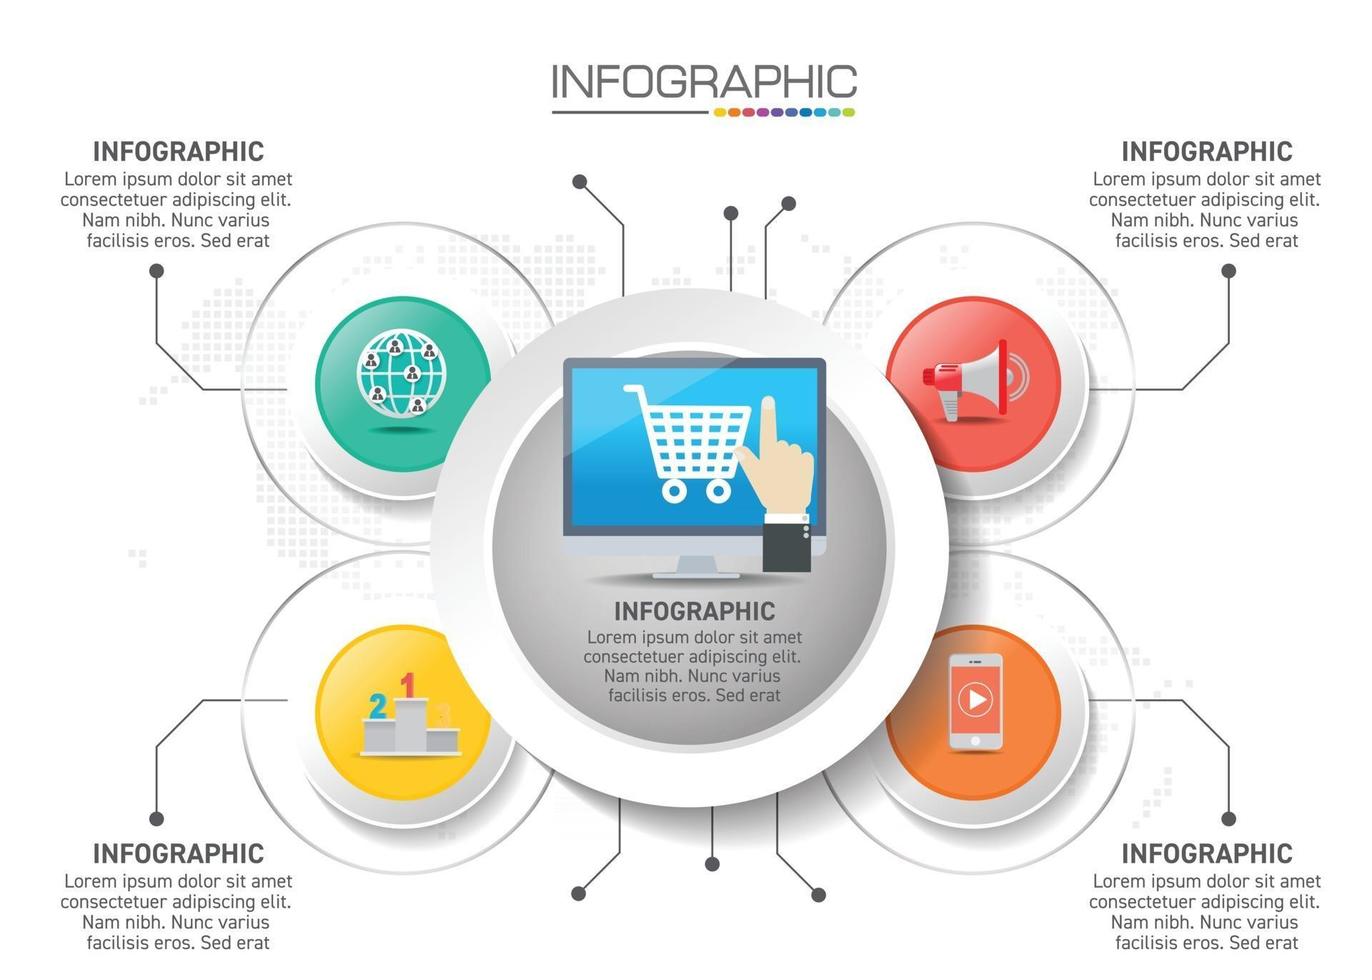 Infografik-Design 4 Schritte mit Marketingsymbolen können für Workflow-Layout, Diagramm, Jahresbericht, Webdesign verwendet werden. vektor